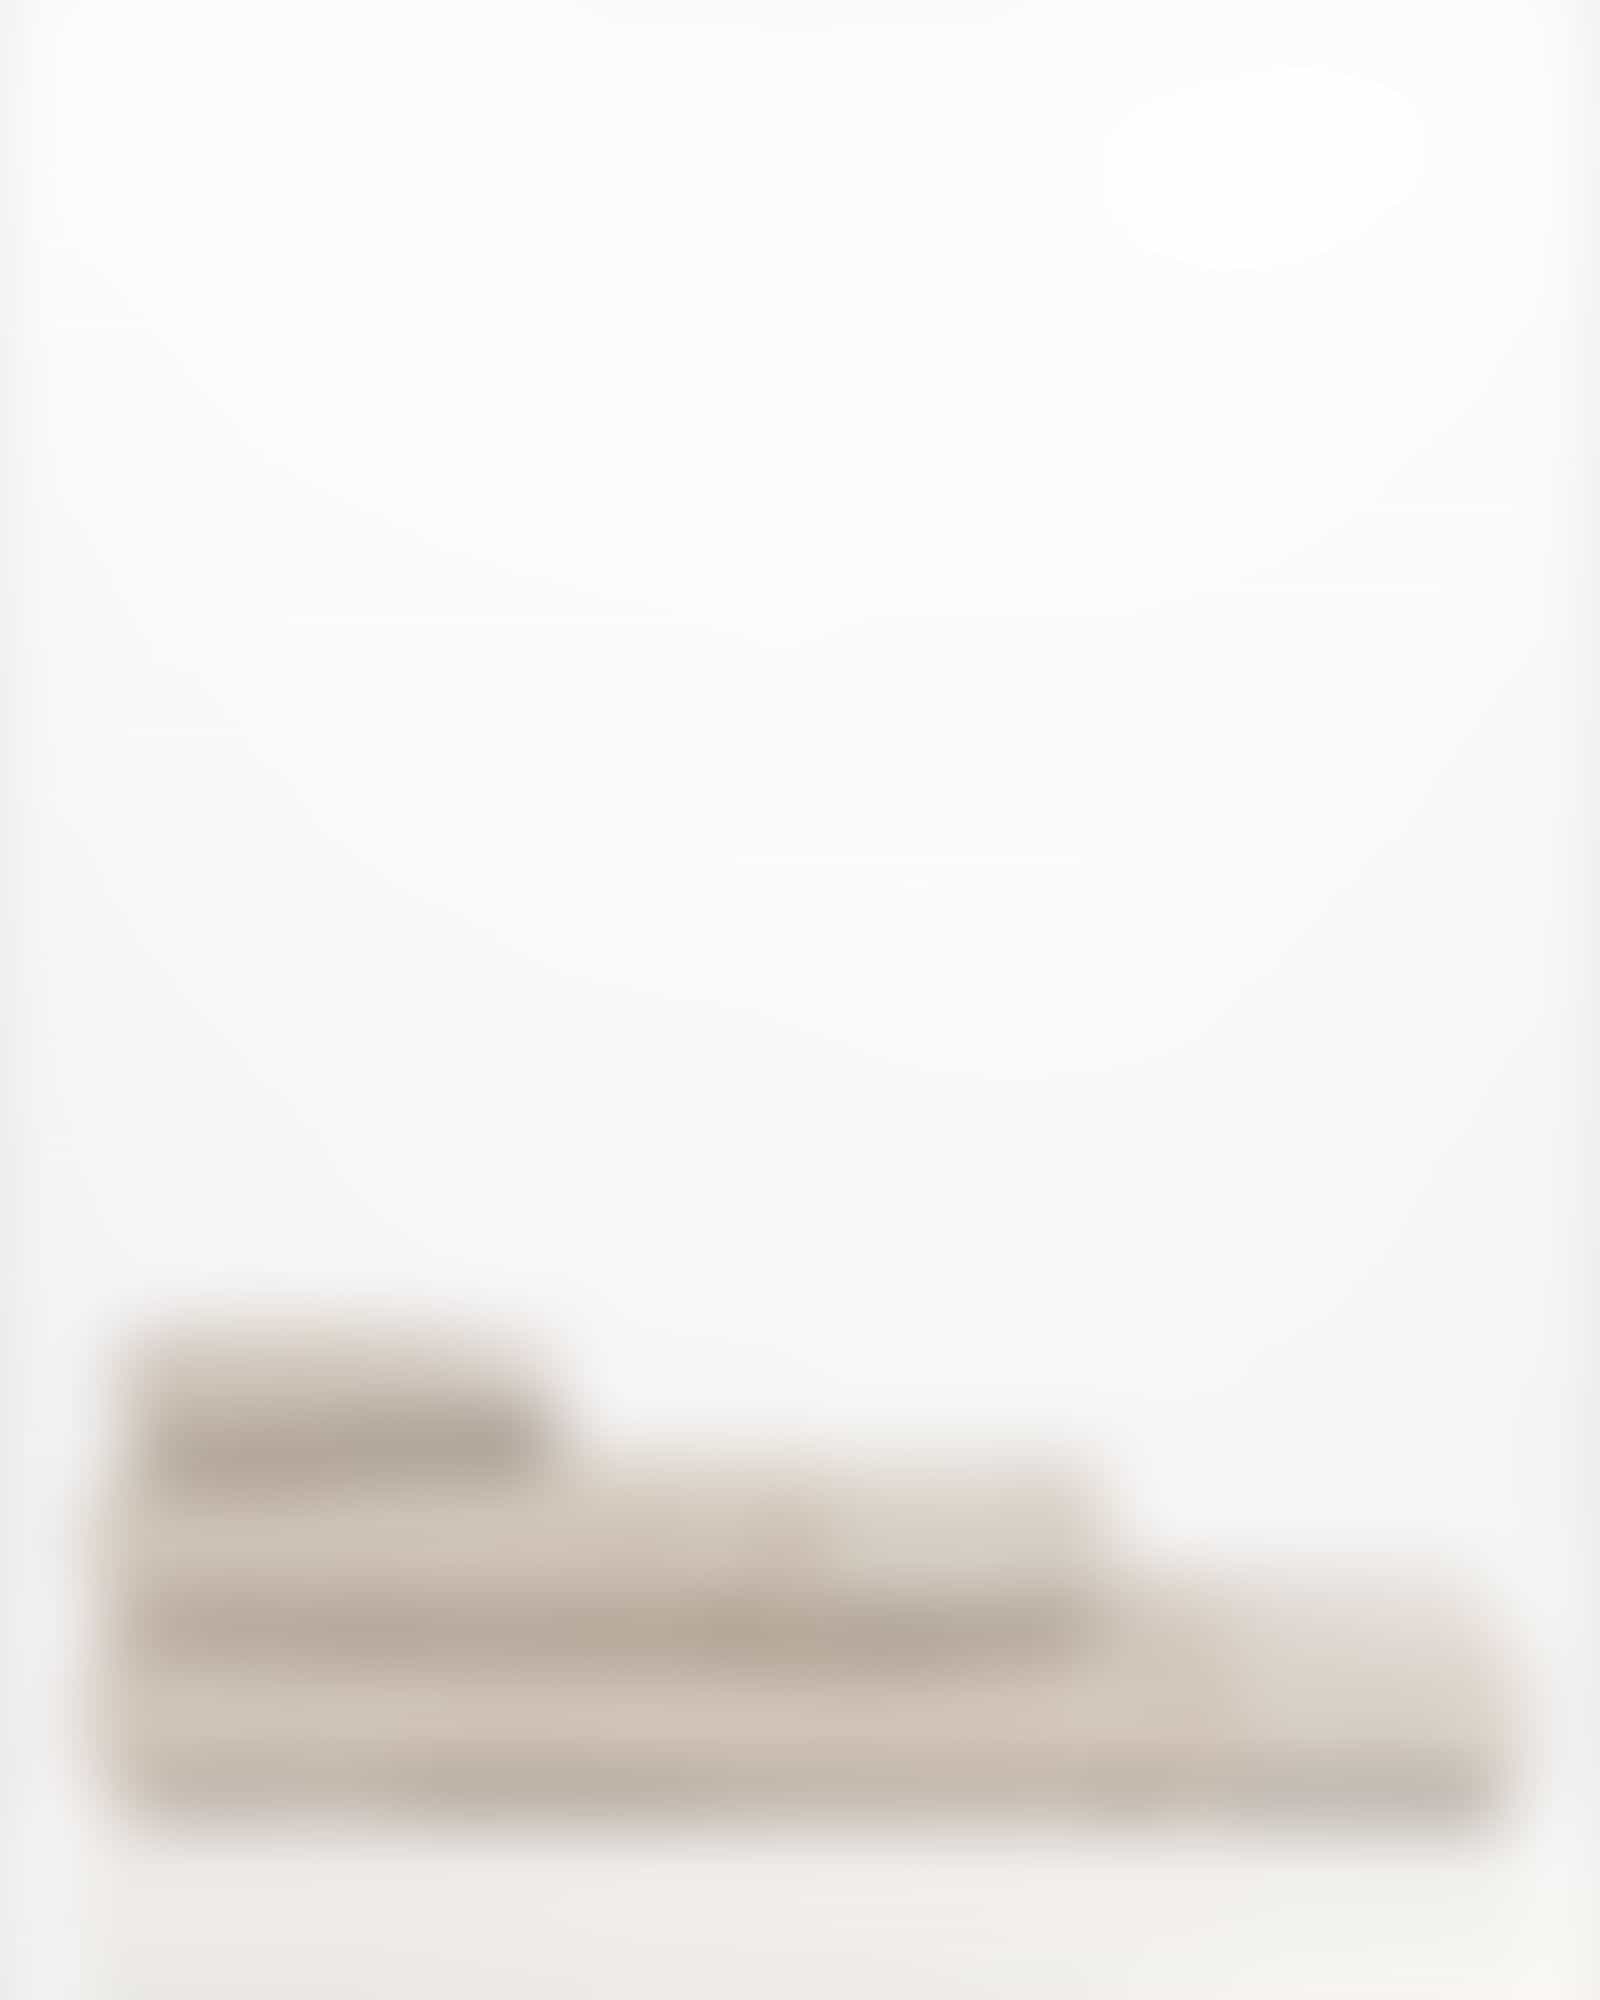 Möve Handtücher Wellbeing Perlstruktur - Farbe: cashmere - 713 - Handtuch 50x100 cm Detailbild 3